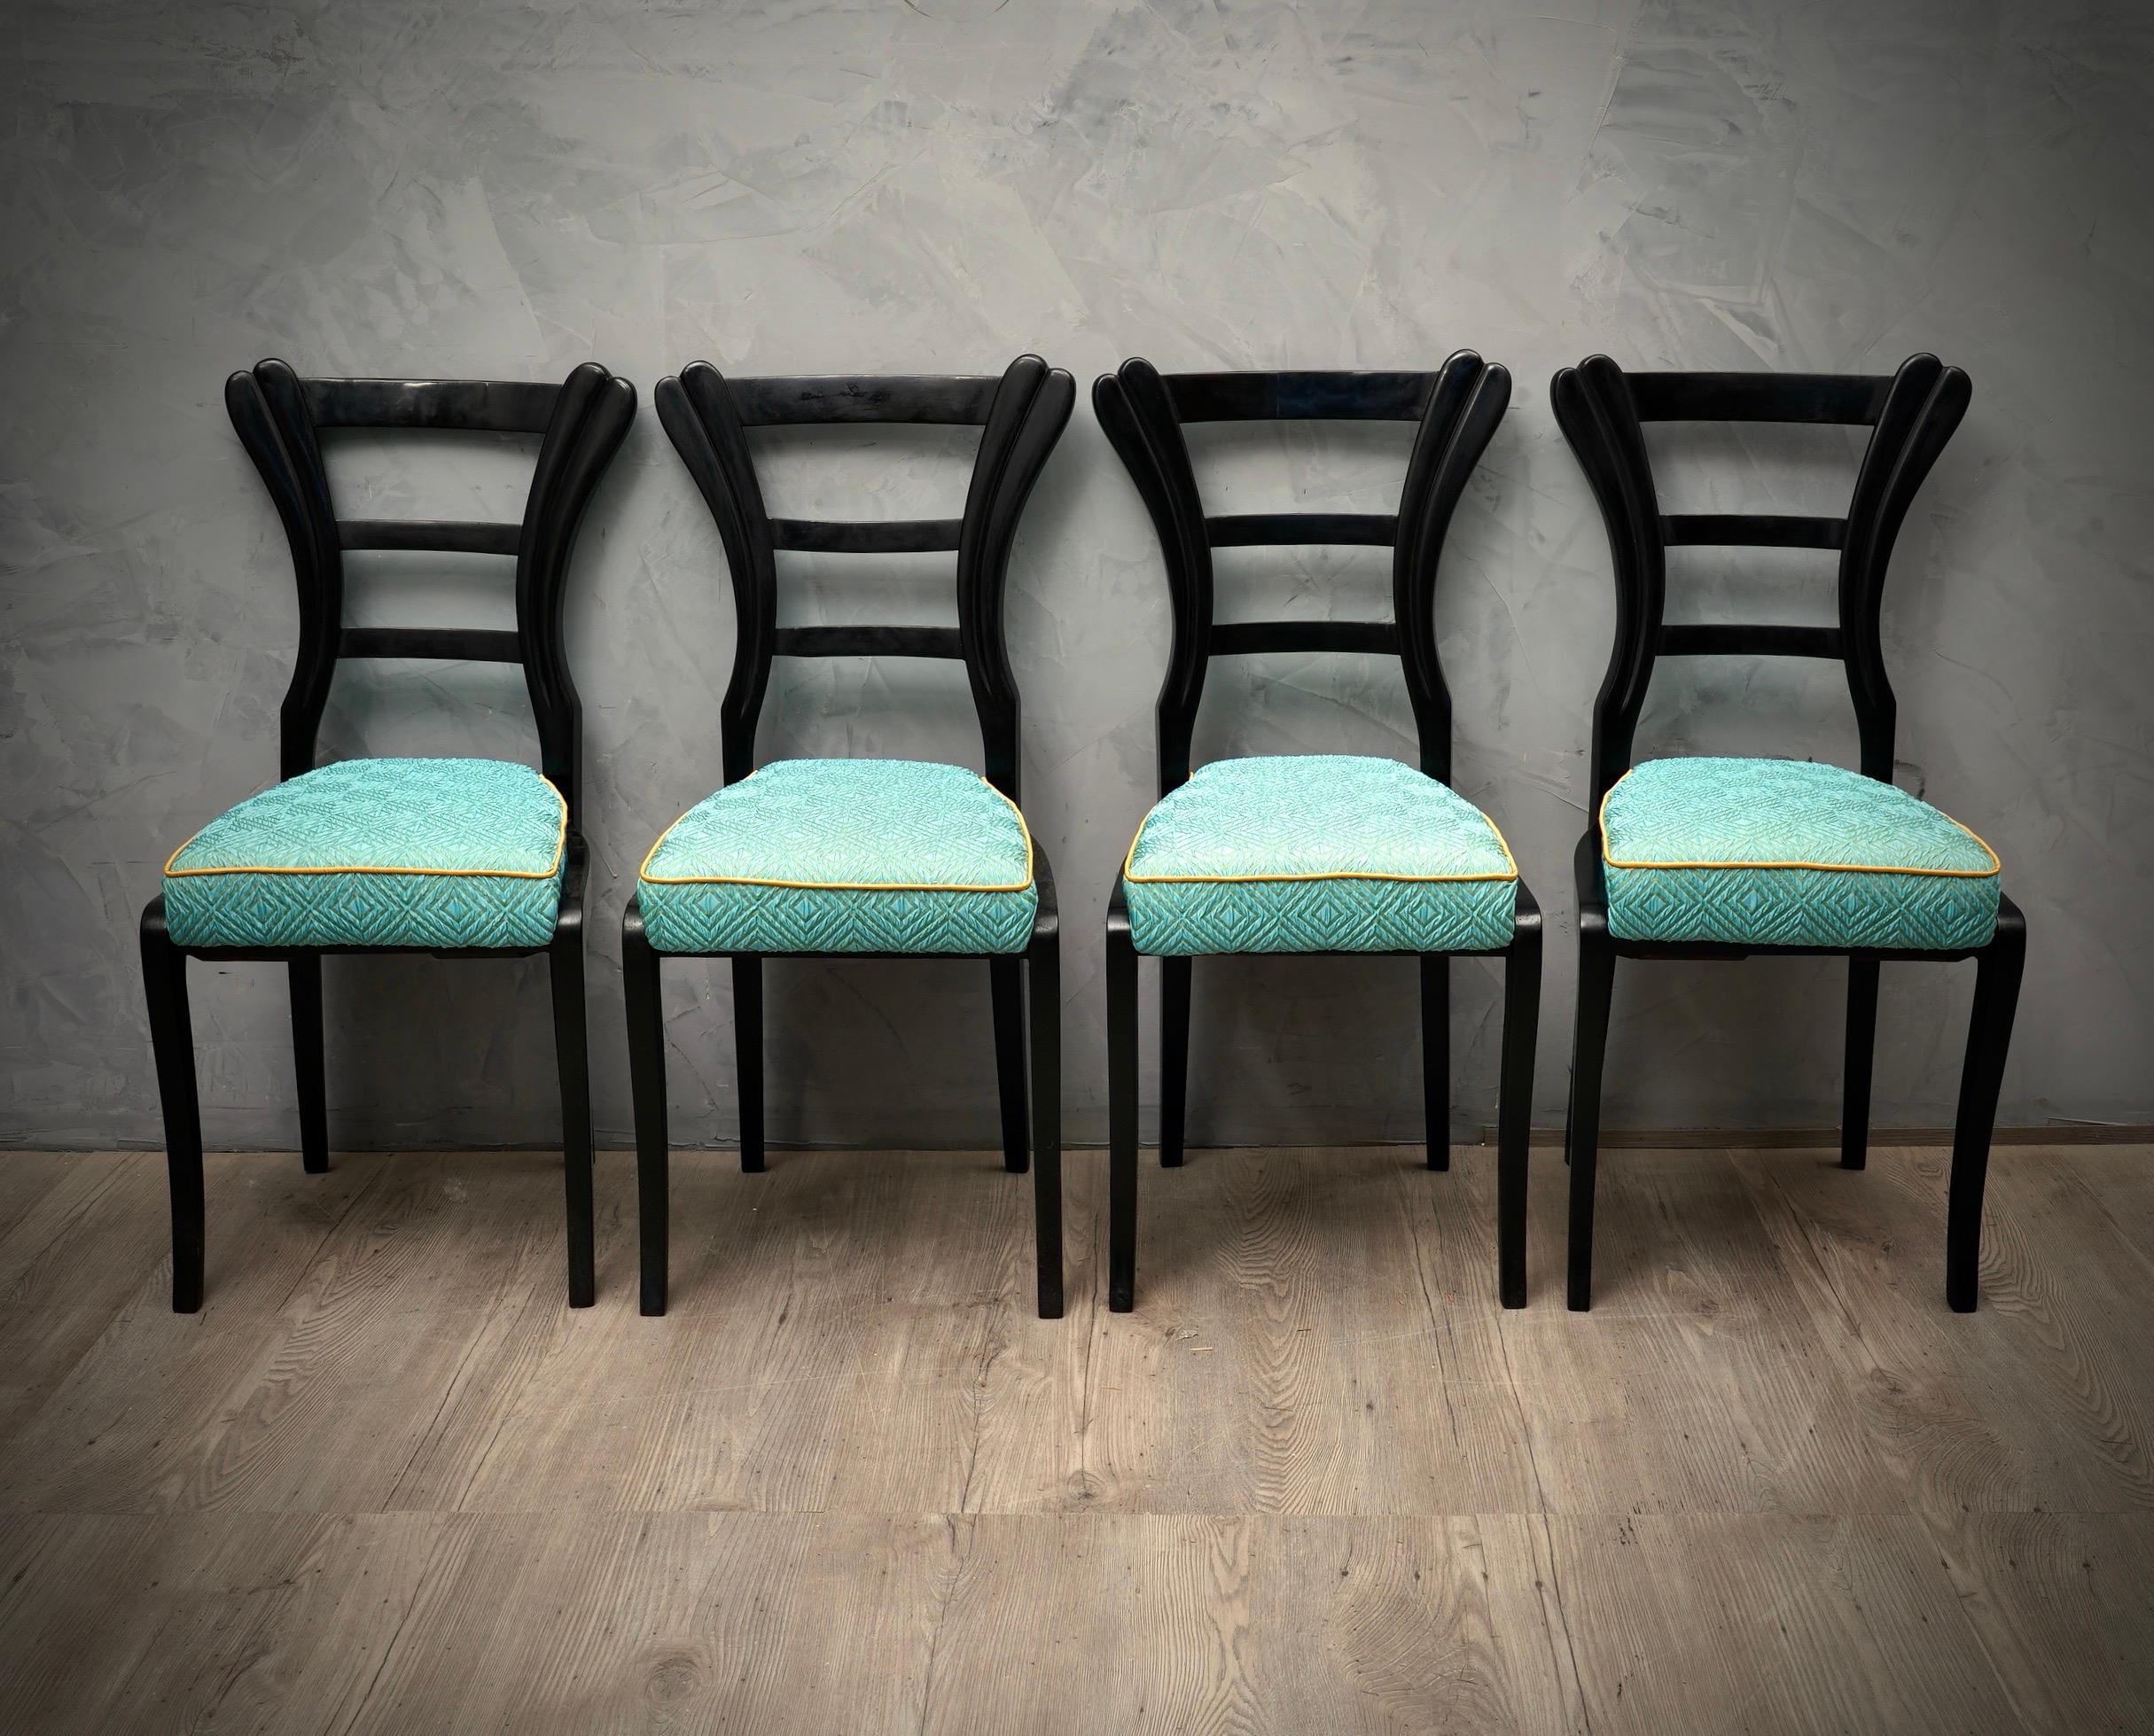 Vier schöne Biedermeier-Stühle mit einem unverwechselbaren Design, schwarzem Schellack für die Struktur und einer schönen blauen Seide für die Sitzfläche.

Die Stühle sind mit schwarzem Schellack poliert, haben ein sehr schönes Design,